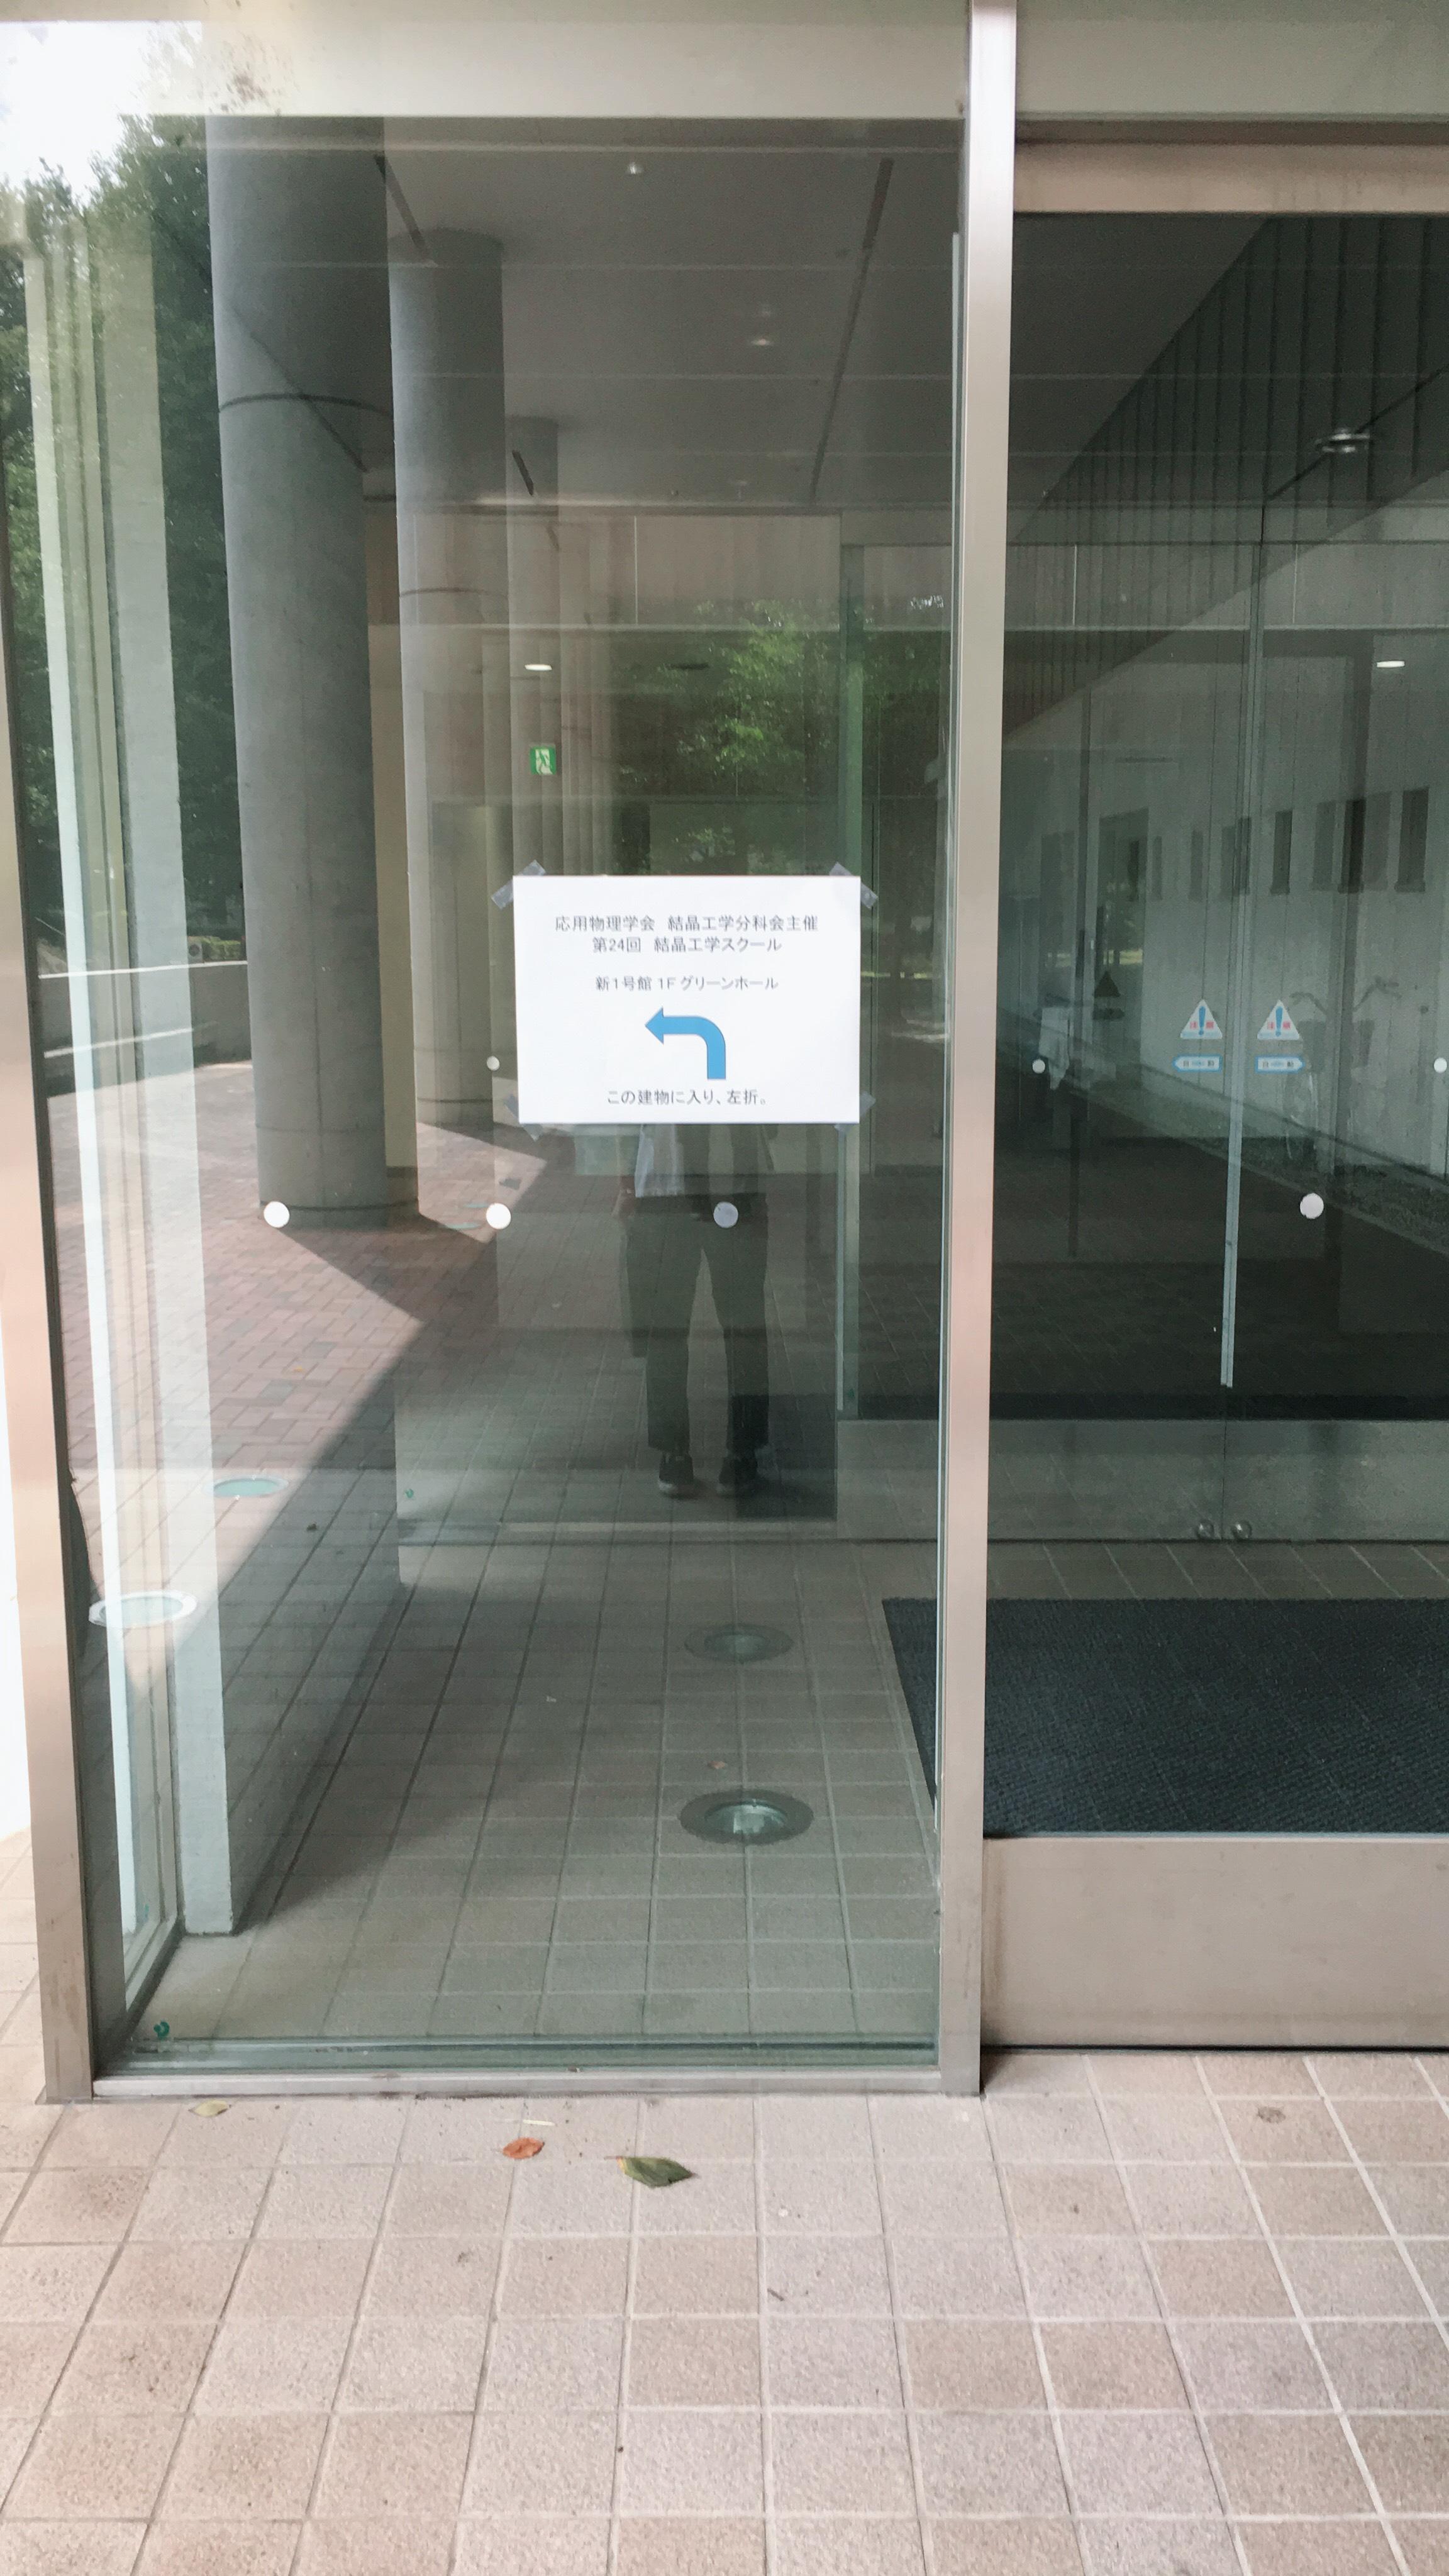 結晶工学スクールの開催箇所である東京農工大学 小金井キャンパス 新１号館１階グリーンホールの前で撮影。